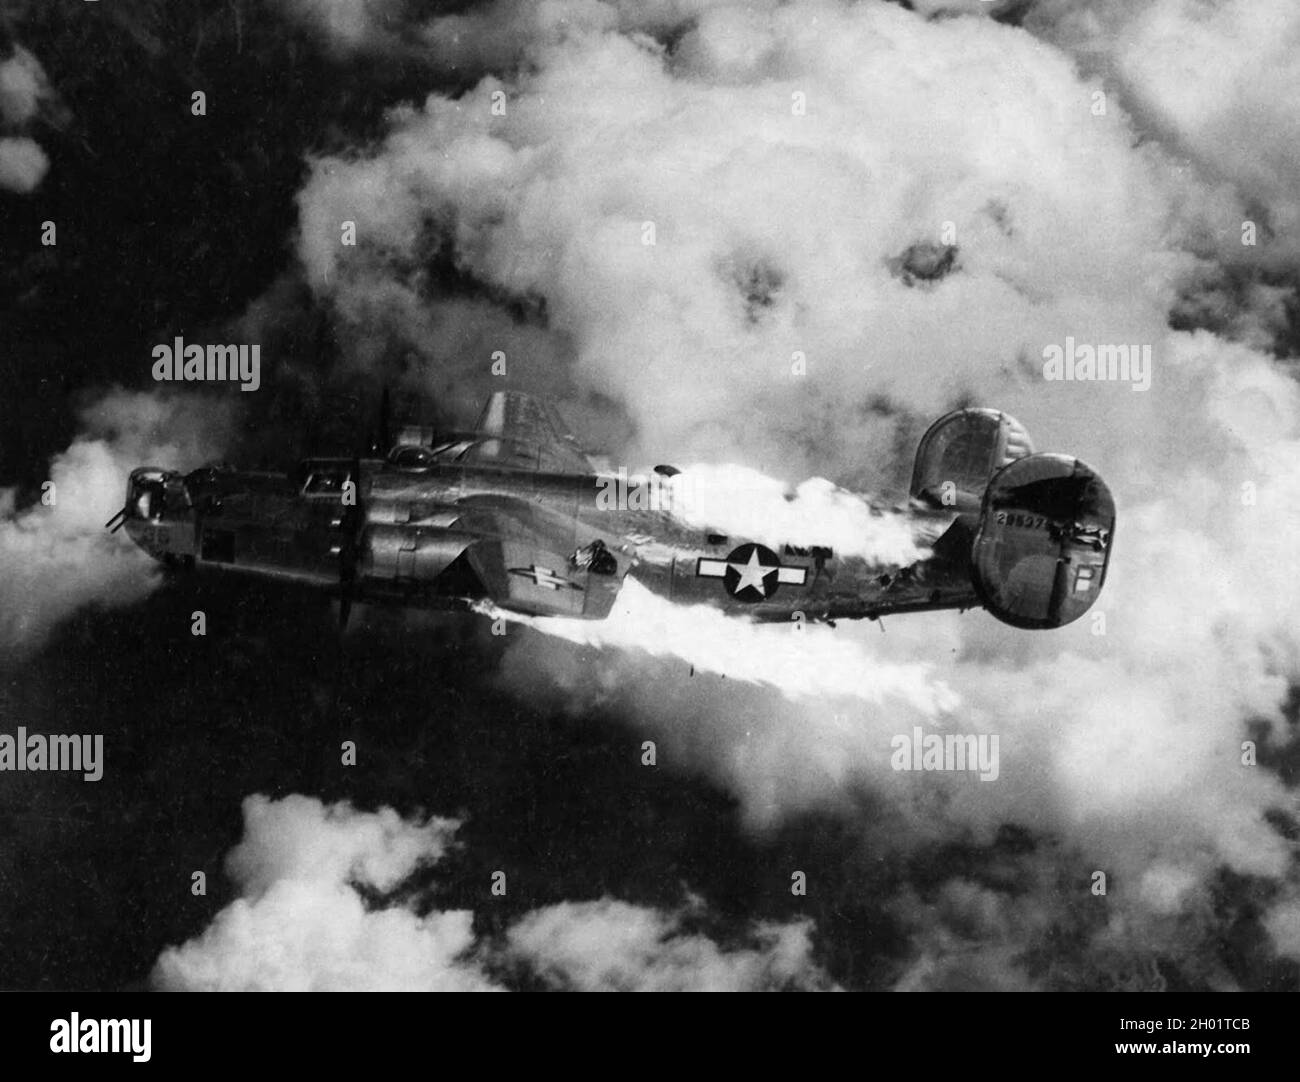 Un bombardiere Liberator consolidato B-24 che brucia dopo essere stato colpito da flak durante un raid. Foto Stock